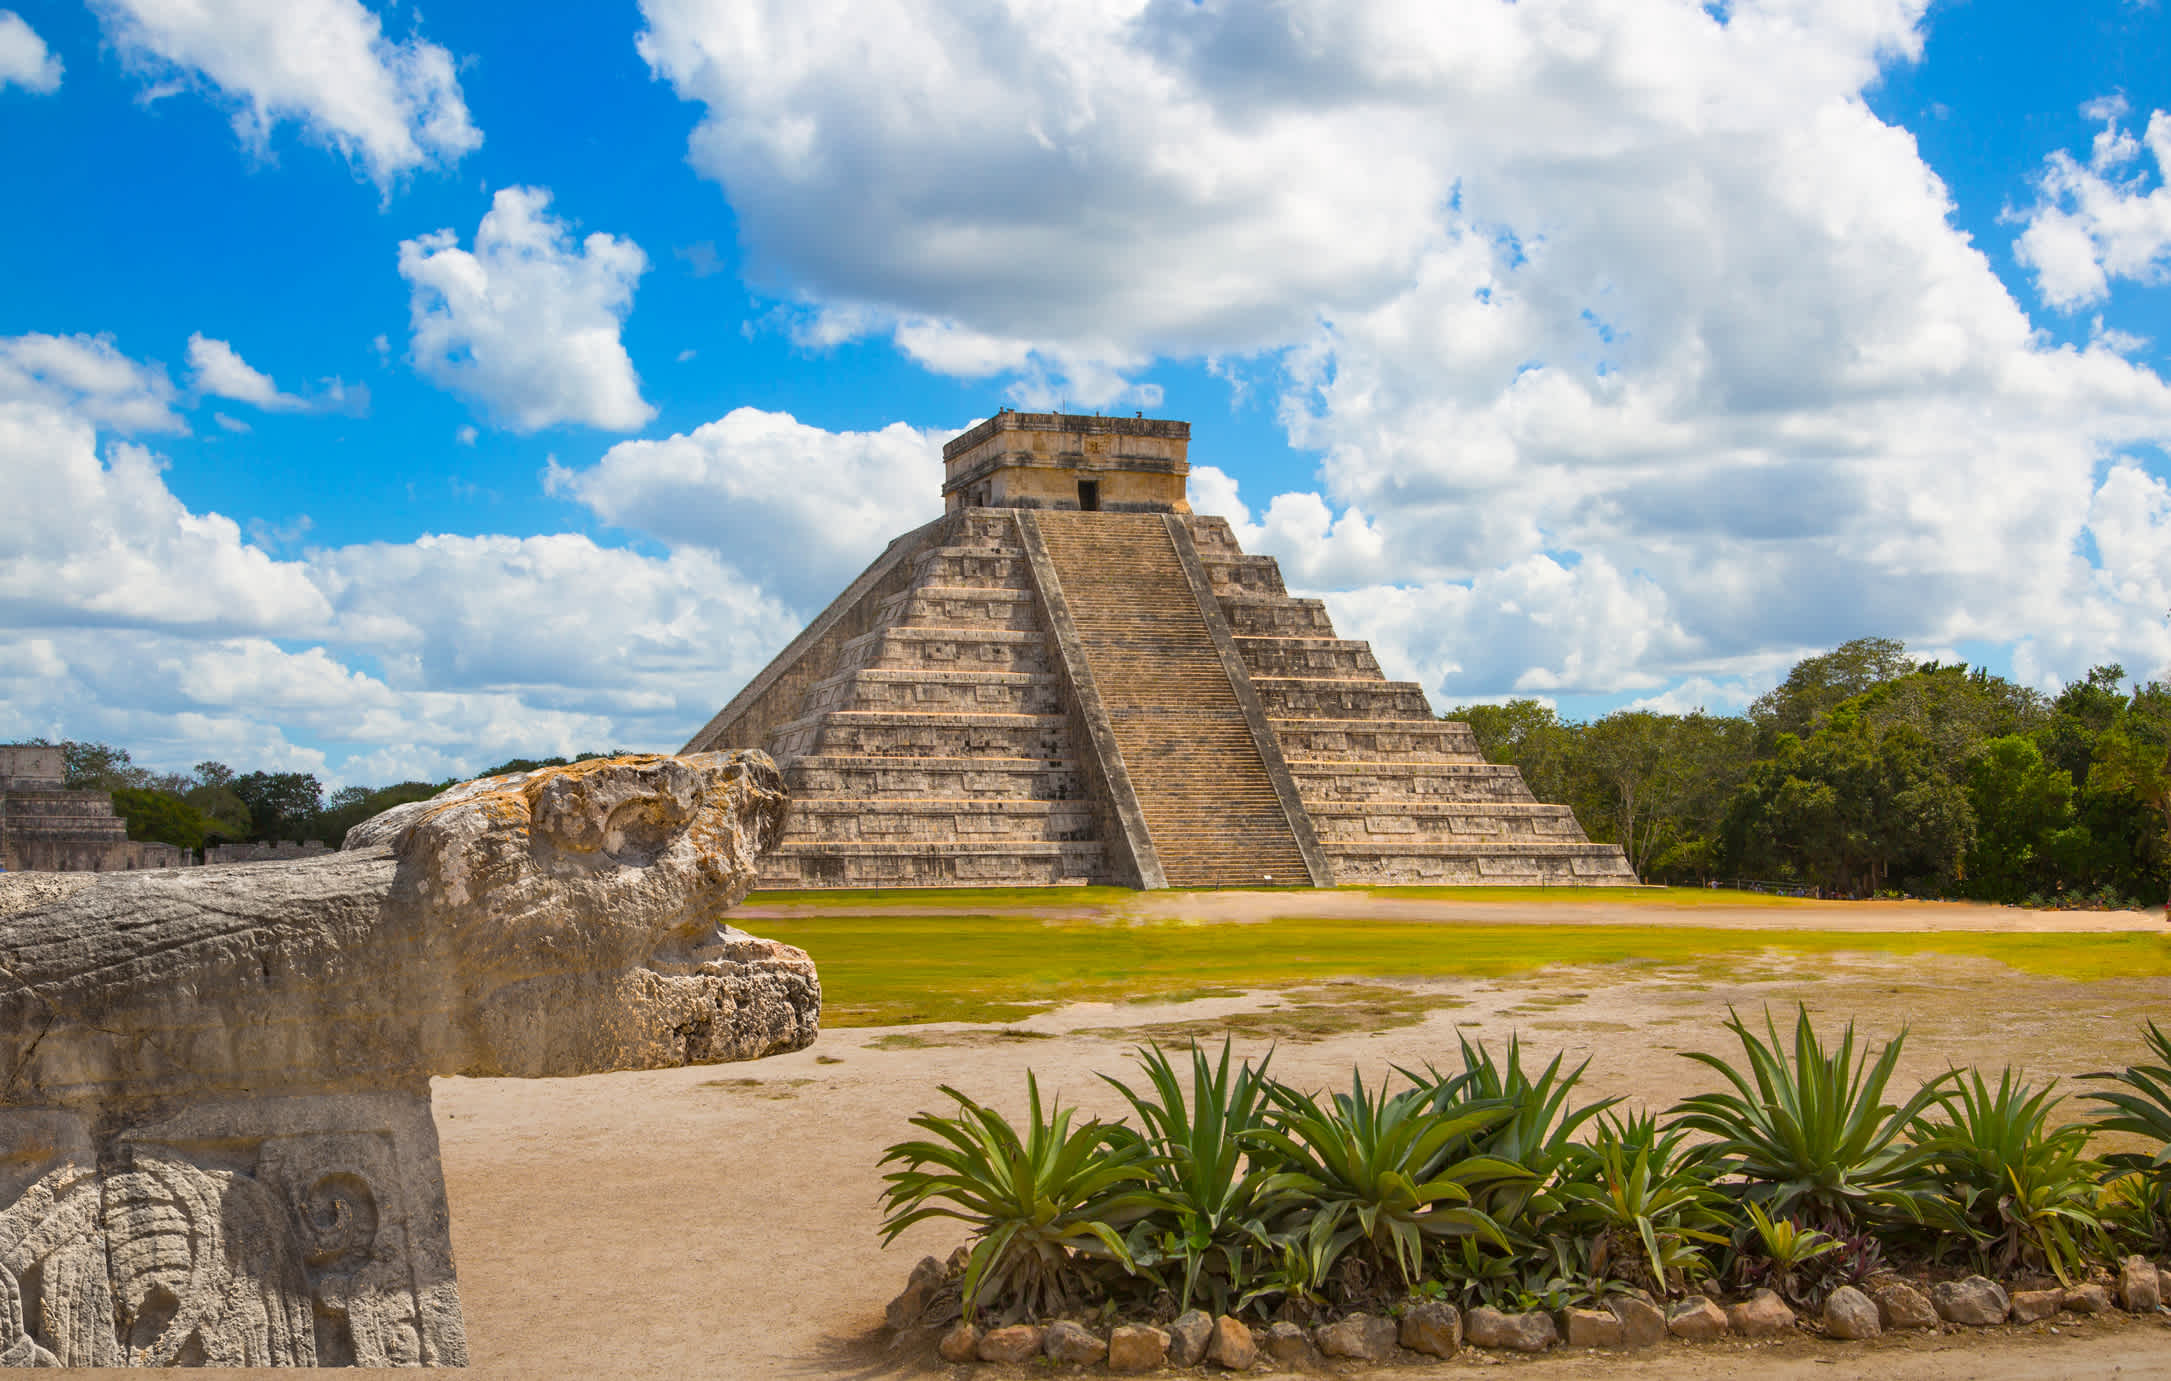 Vue de la pyramide maya du Kukulcan El Castillo, Chichen Itzá, au Yucatán, au Mexique.